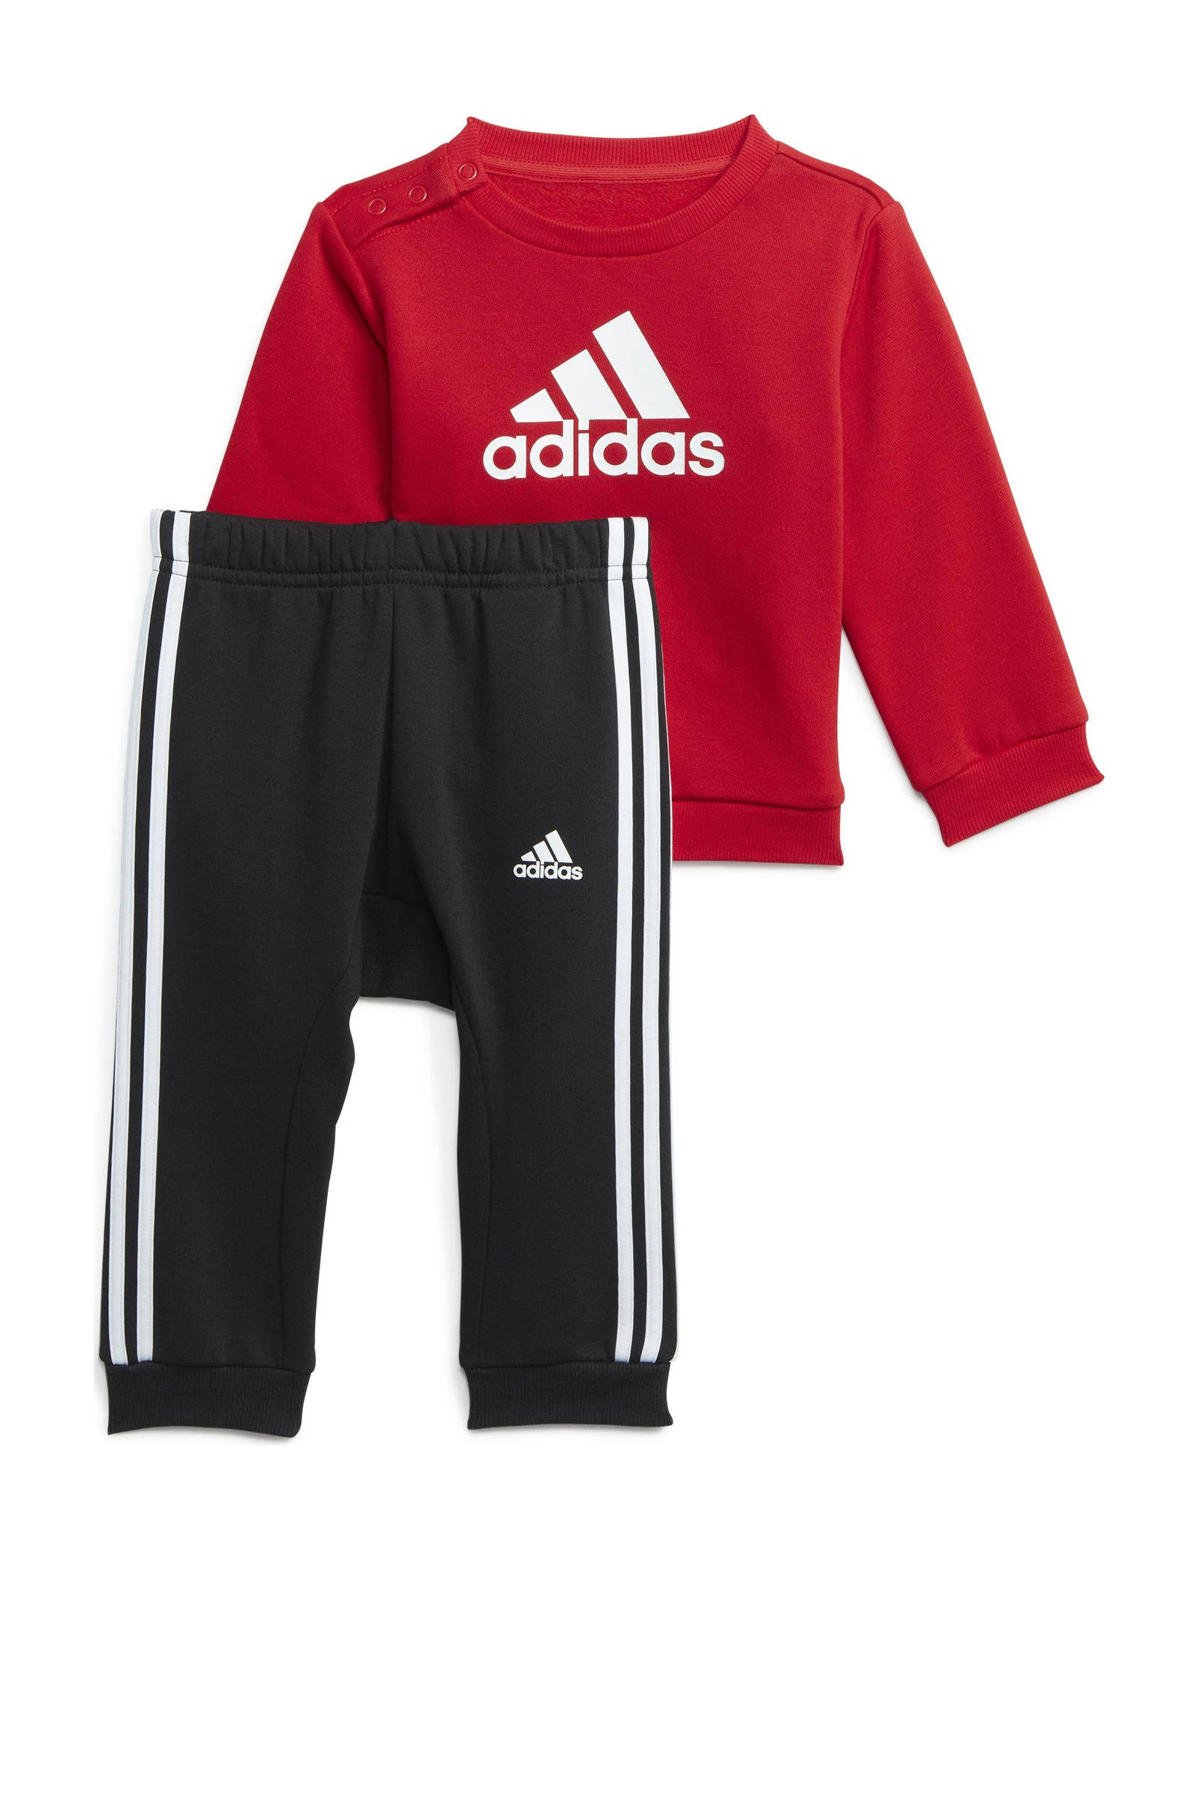 Ongepast Beschuldigingen benzine adidas Sportswear joggingpak rood/zwart | wehkamp